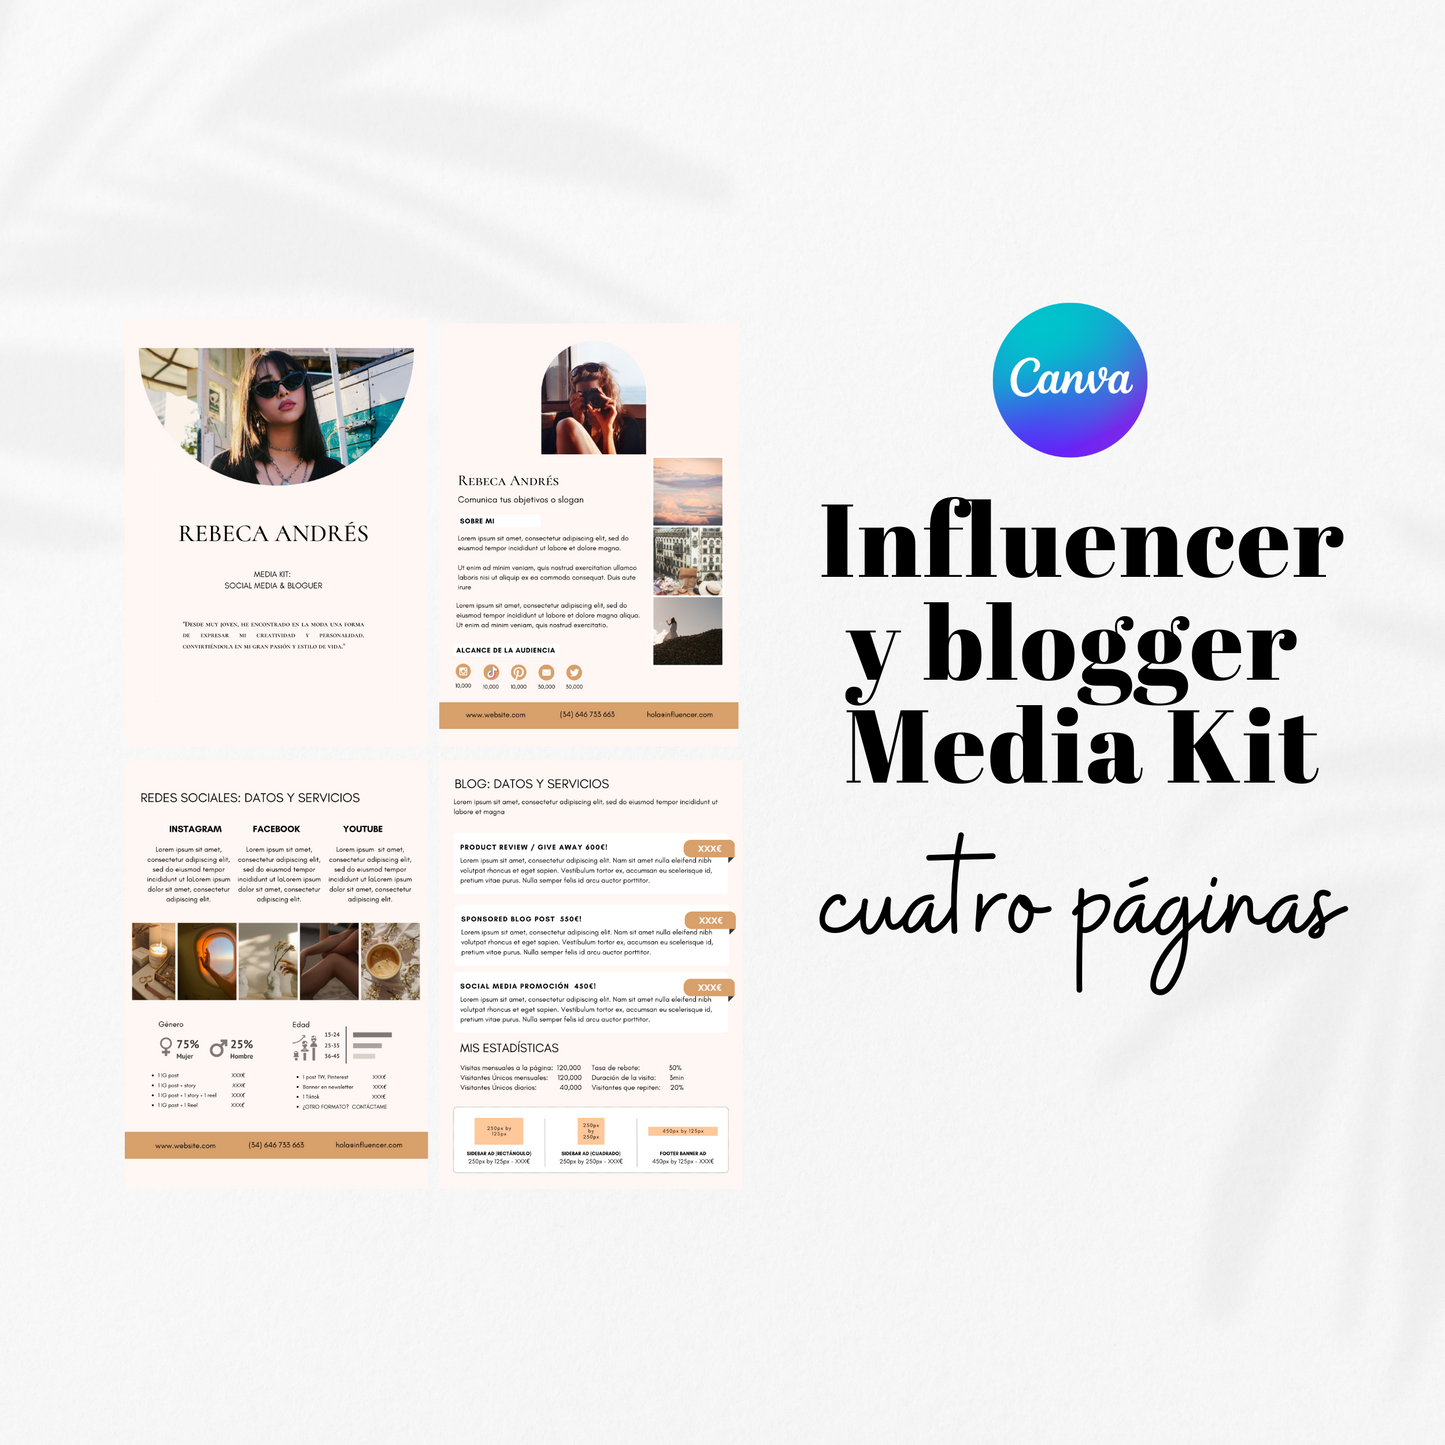 Media kit para bloggers e influencers 4 páginas